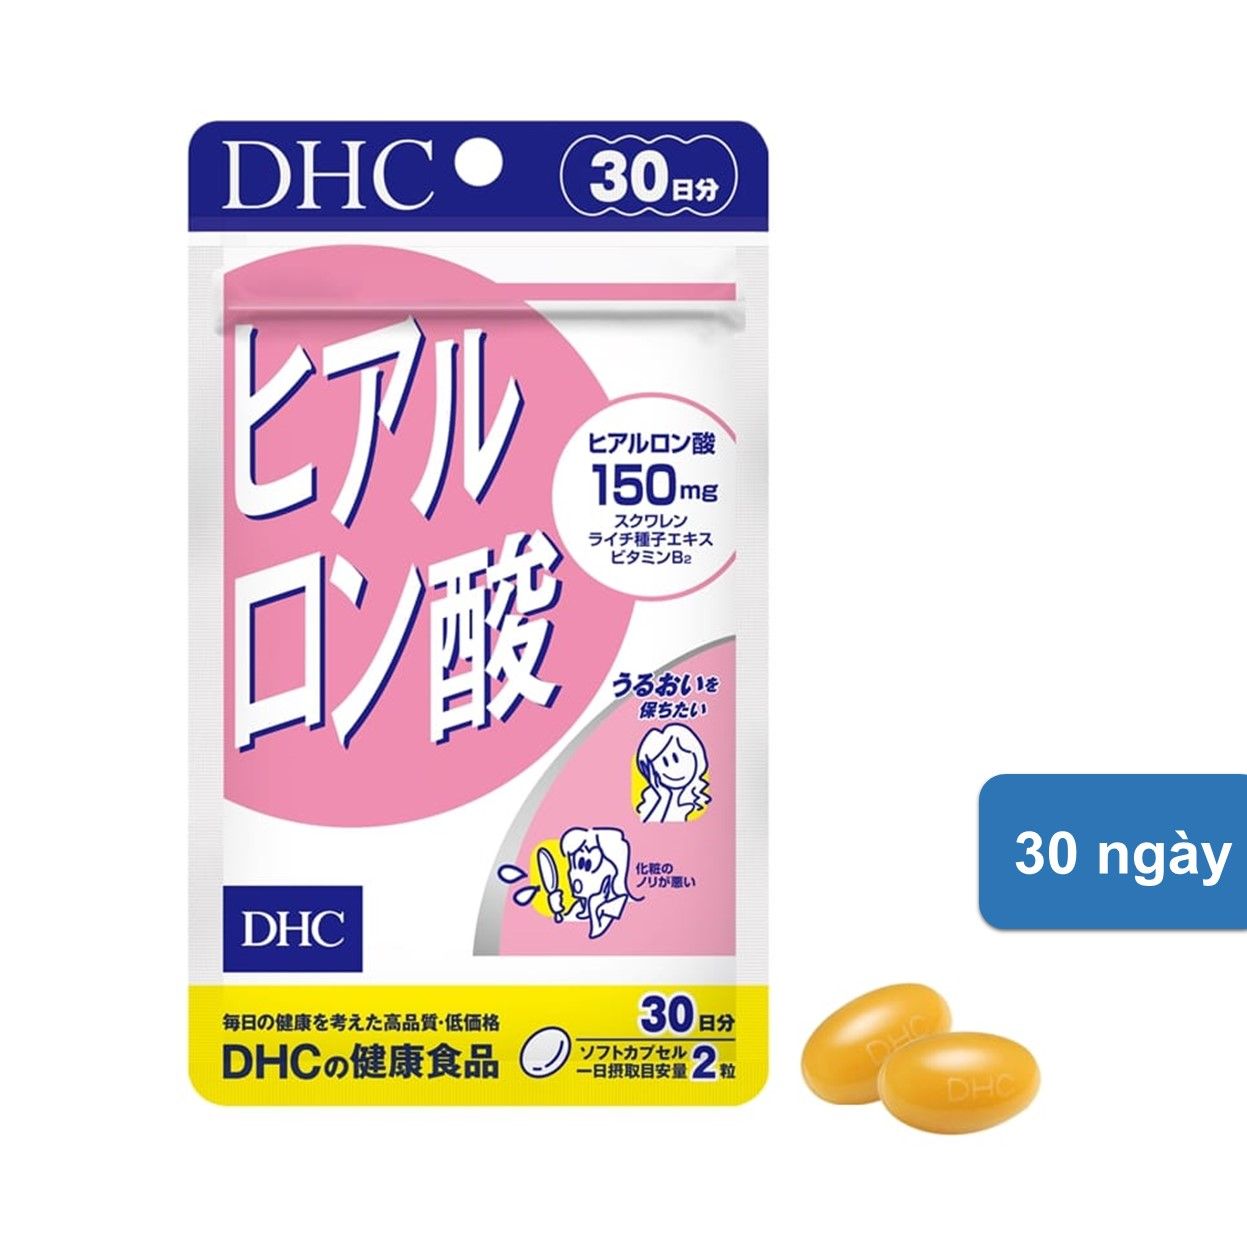  Viên Uống DHC Giữ Ẩm Cấp Nước DHC Hyaluronic Acid 30 Ngày 